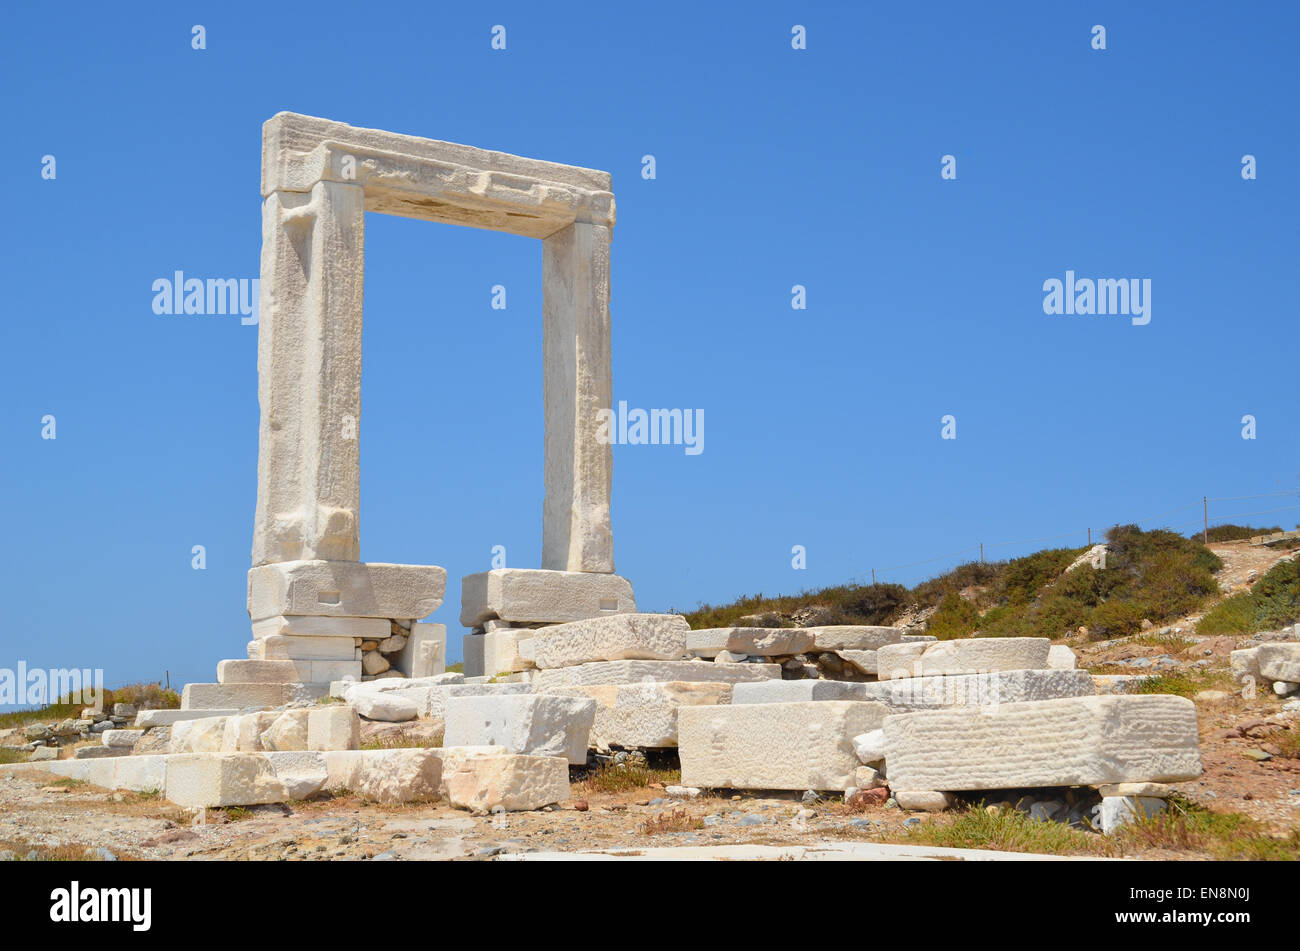 Naxos-griechische Insel, "Portara" antiken griechischen Tempeltür - Murmeln Stockfoto